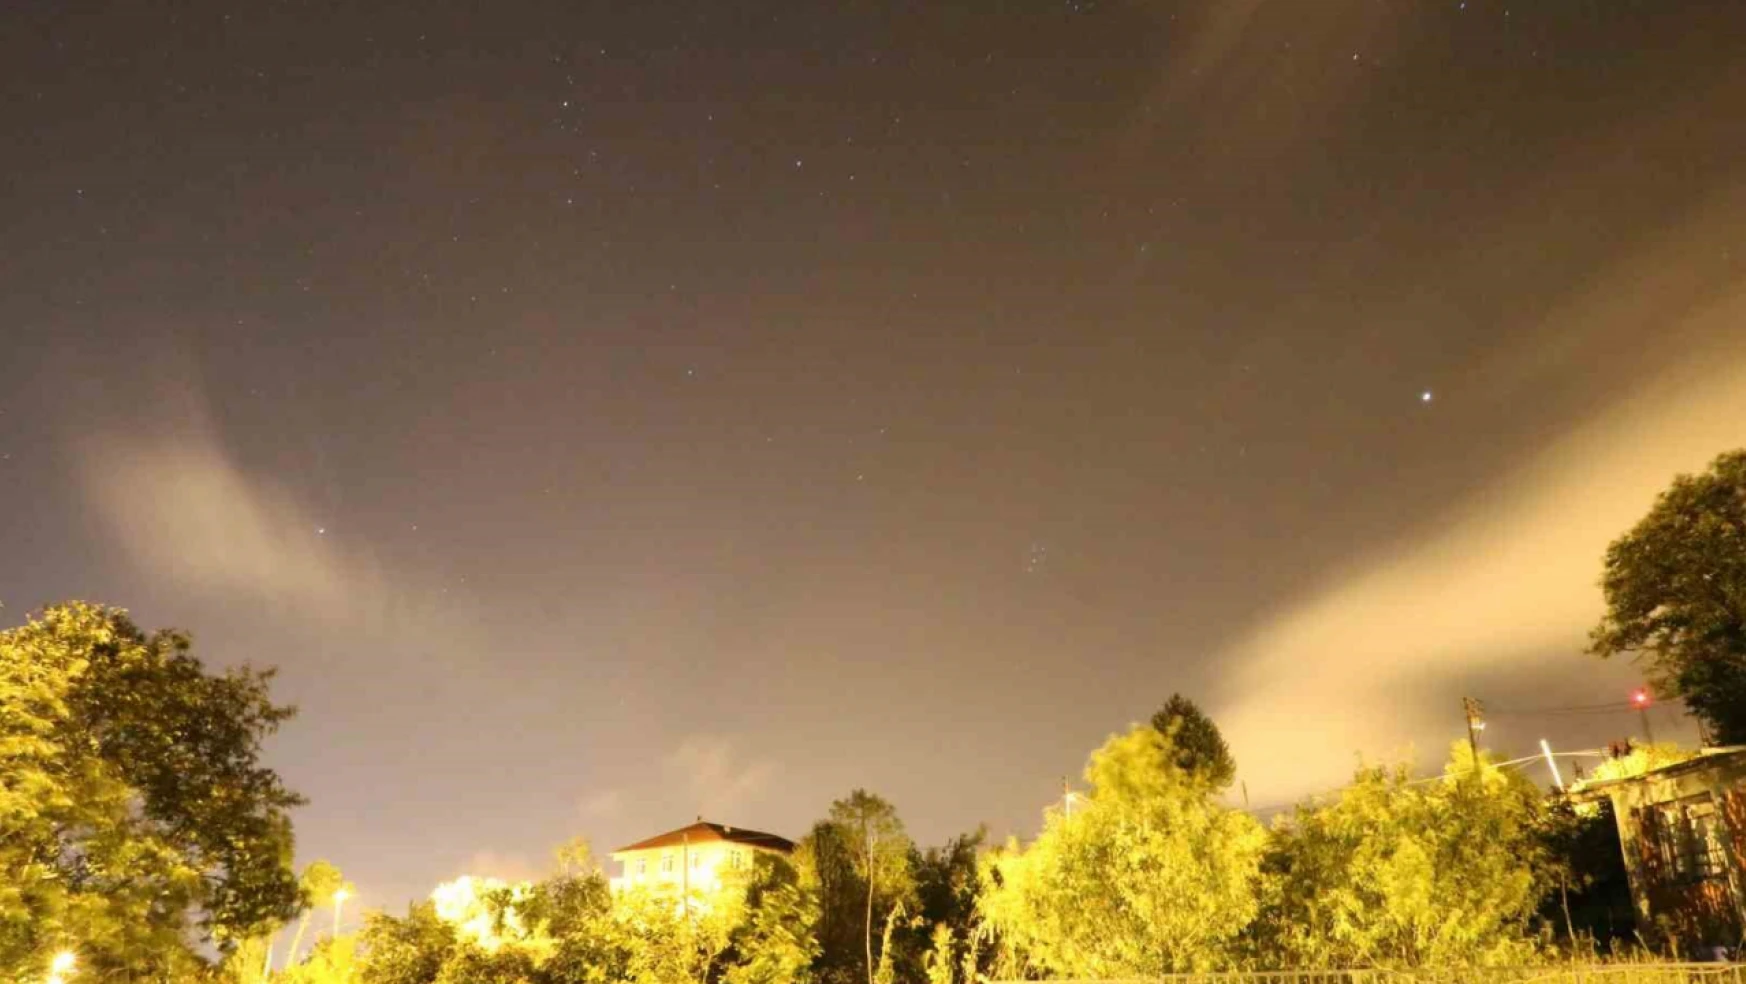 Zonguldak'ta meteor yağmuru böyle görüntülendi